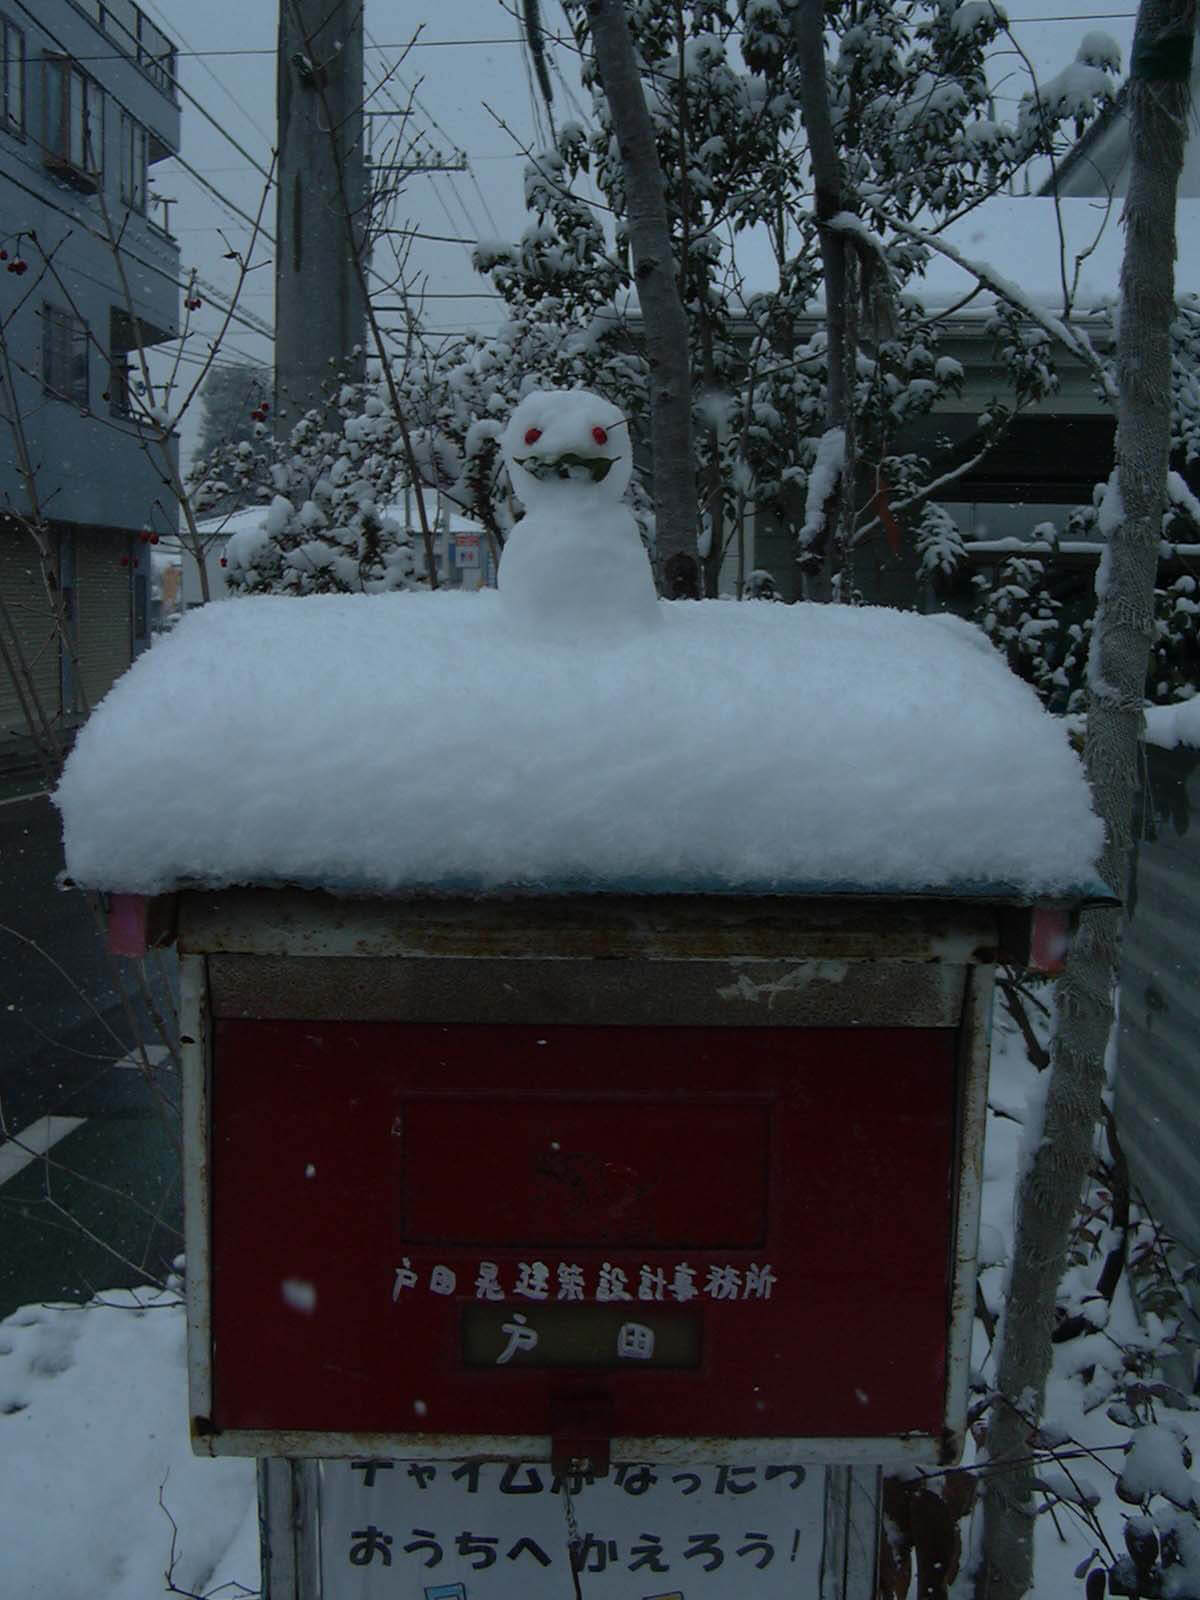 雪の日に、自宅のポスト上に置かれた小さな雪だるま